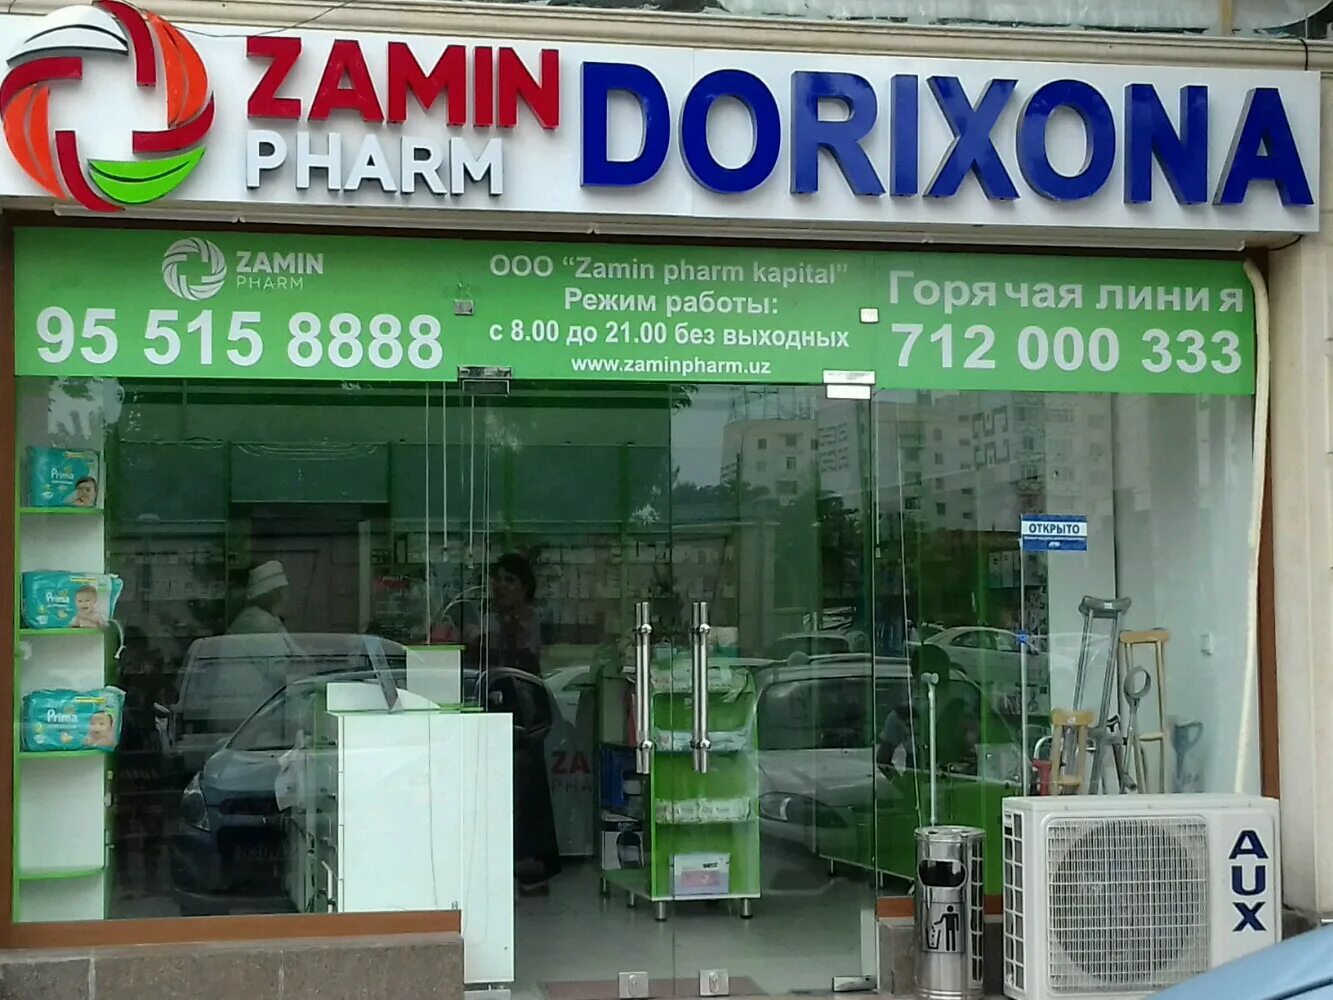 Номер телефона аптеки на ул. Аптека в Ташкенте фарм. Замин фарм аптека. Замин фарм в Ташкенте. Аптеки в Ташкенте.